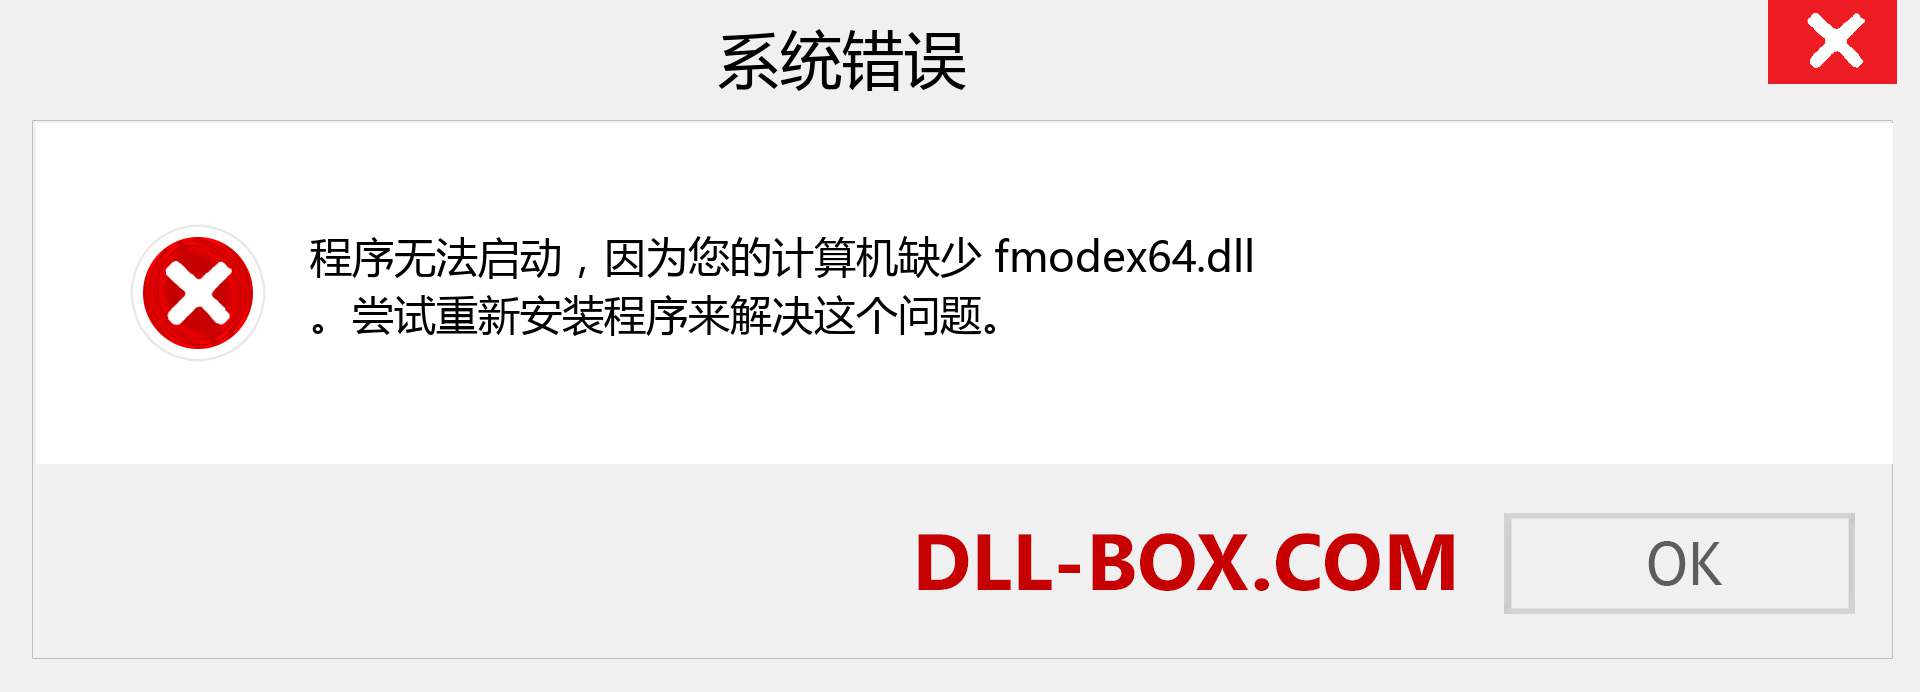 fmodex64.dll 文件丢失？。 适用于 Windows 7、8、10 的下载 - 修复 Windows、照片、图像上的 fmodex64 dll 丢失错误